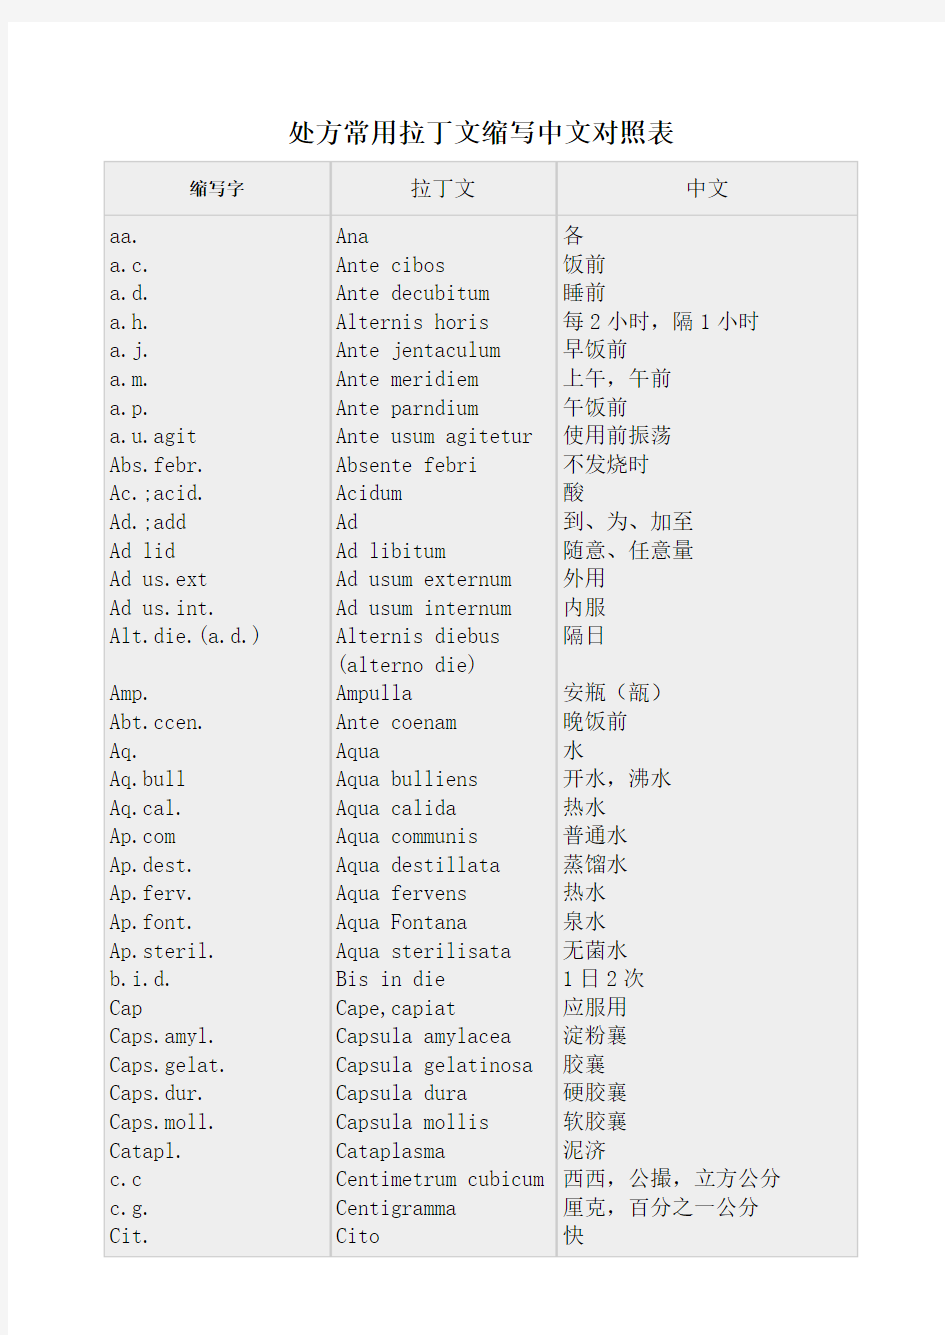 处方常用拉丁文缩写中文对照表__常用医学英文缩写对照表